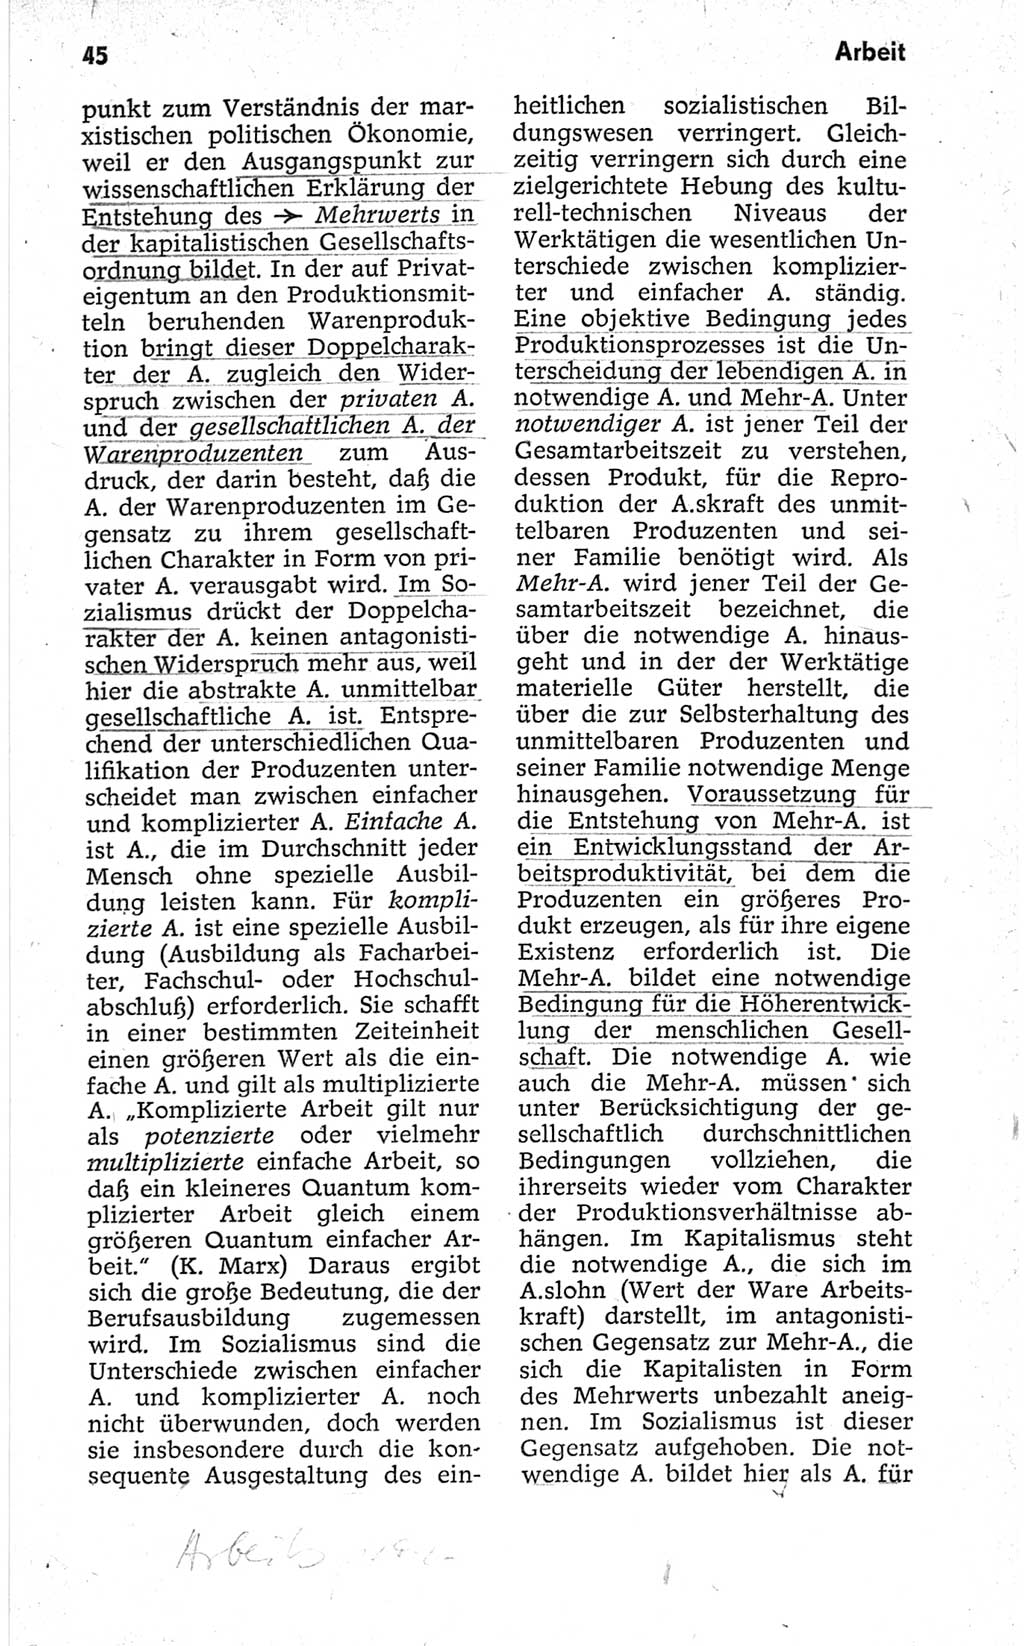 Kleines politisches Wörterbuch [Deutsche Demokratische Republik (DDR)] 1967, Seite 45 (Kl. pol. Wb. DDR 1967, S. 45)